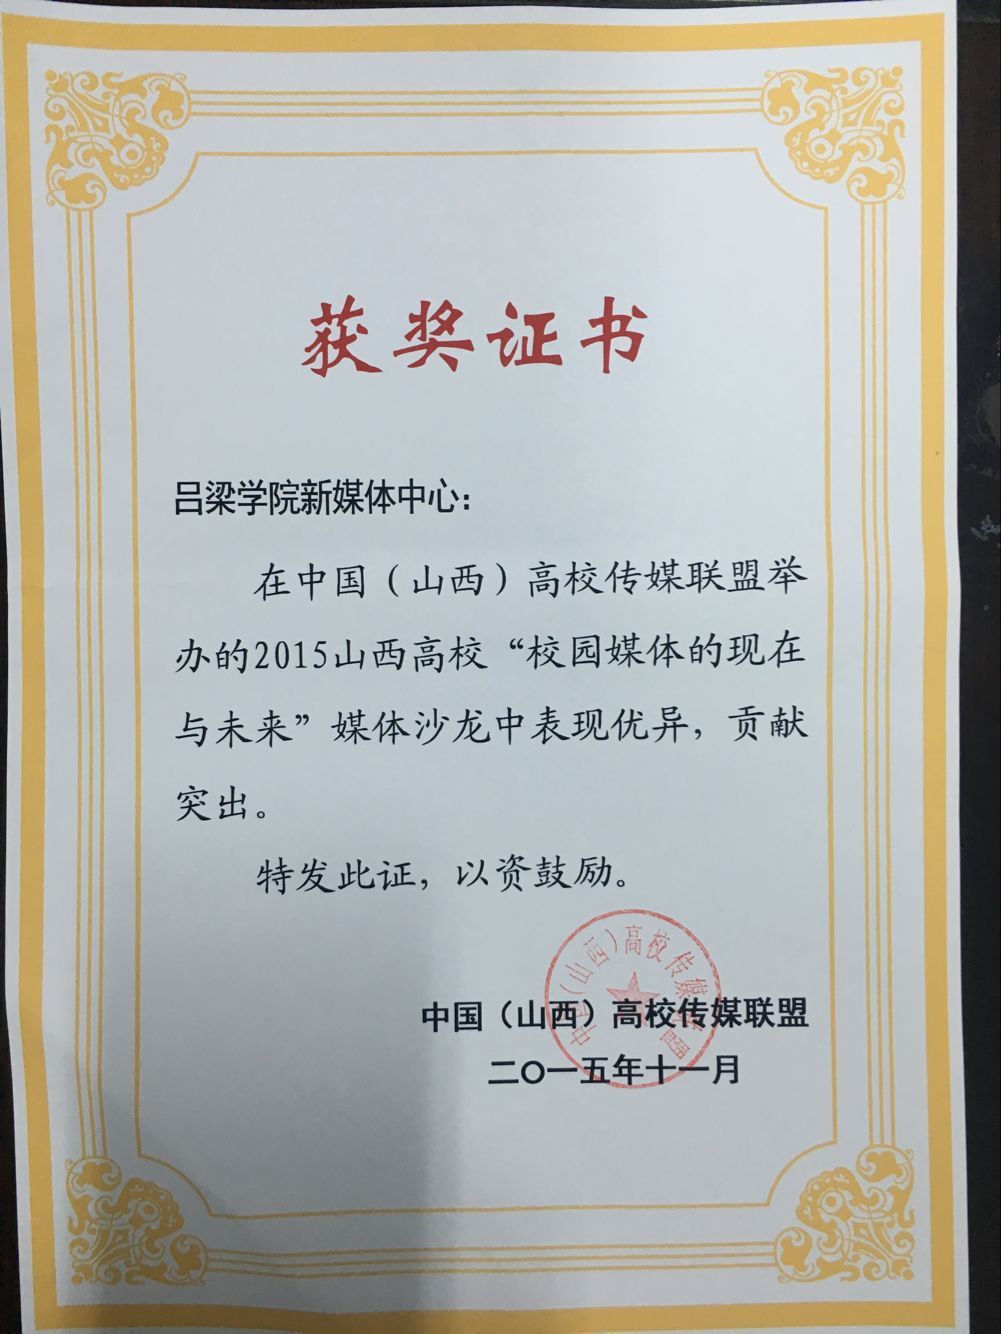 我校大学生记者团荣获中国山西高校传媒联盟“优秀会员媒体”称号